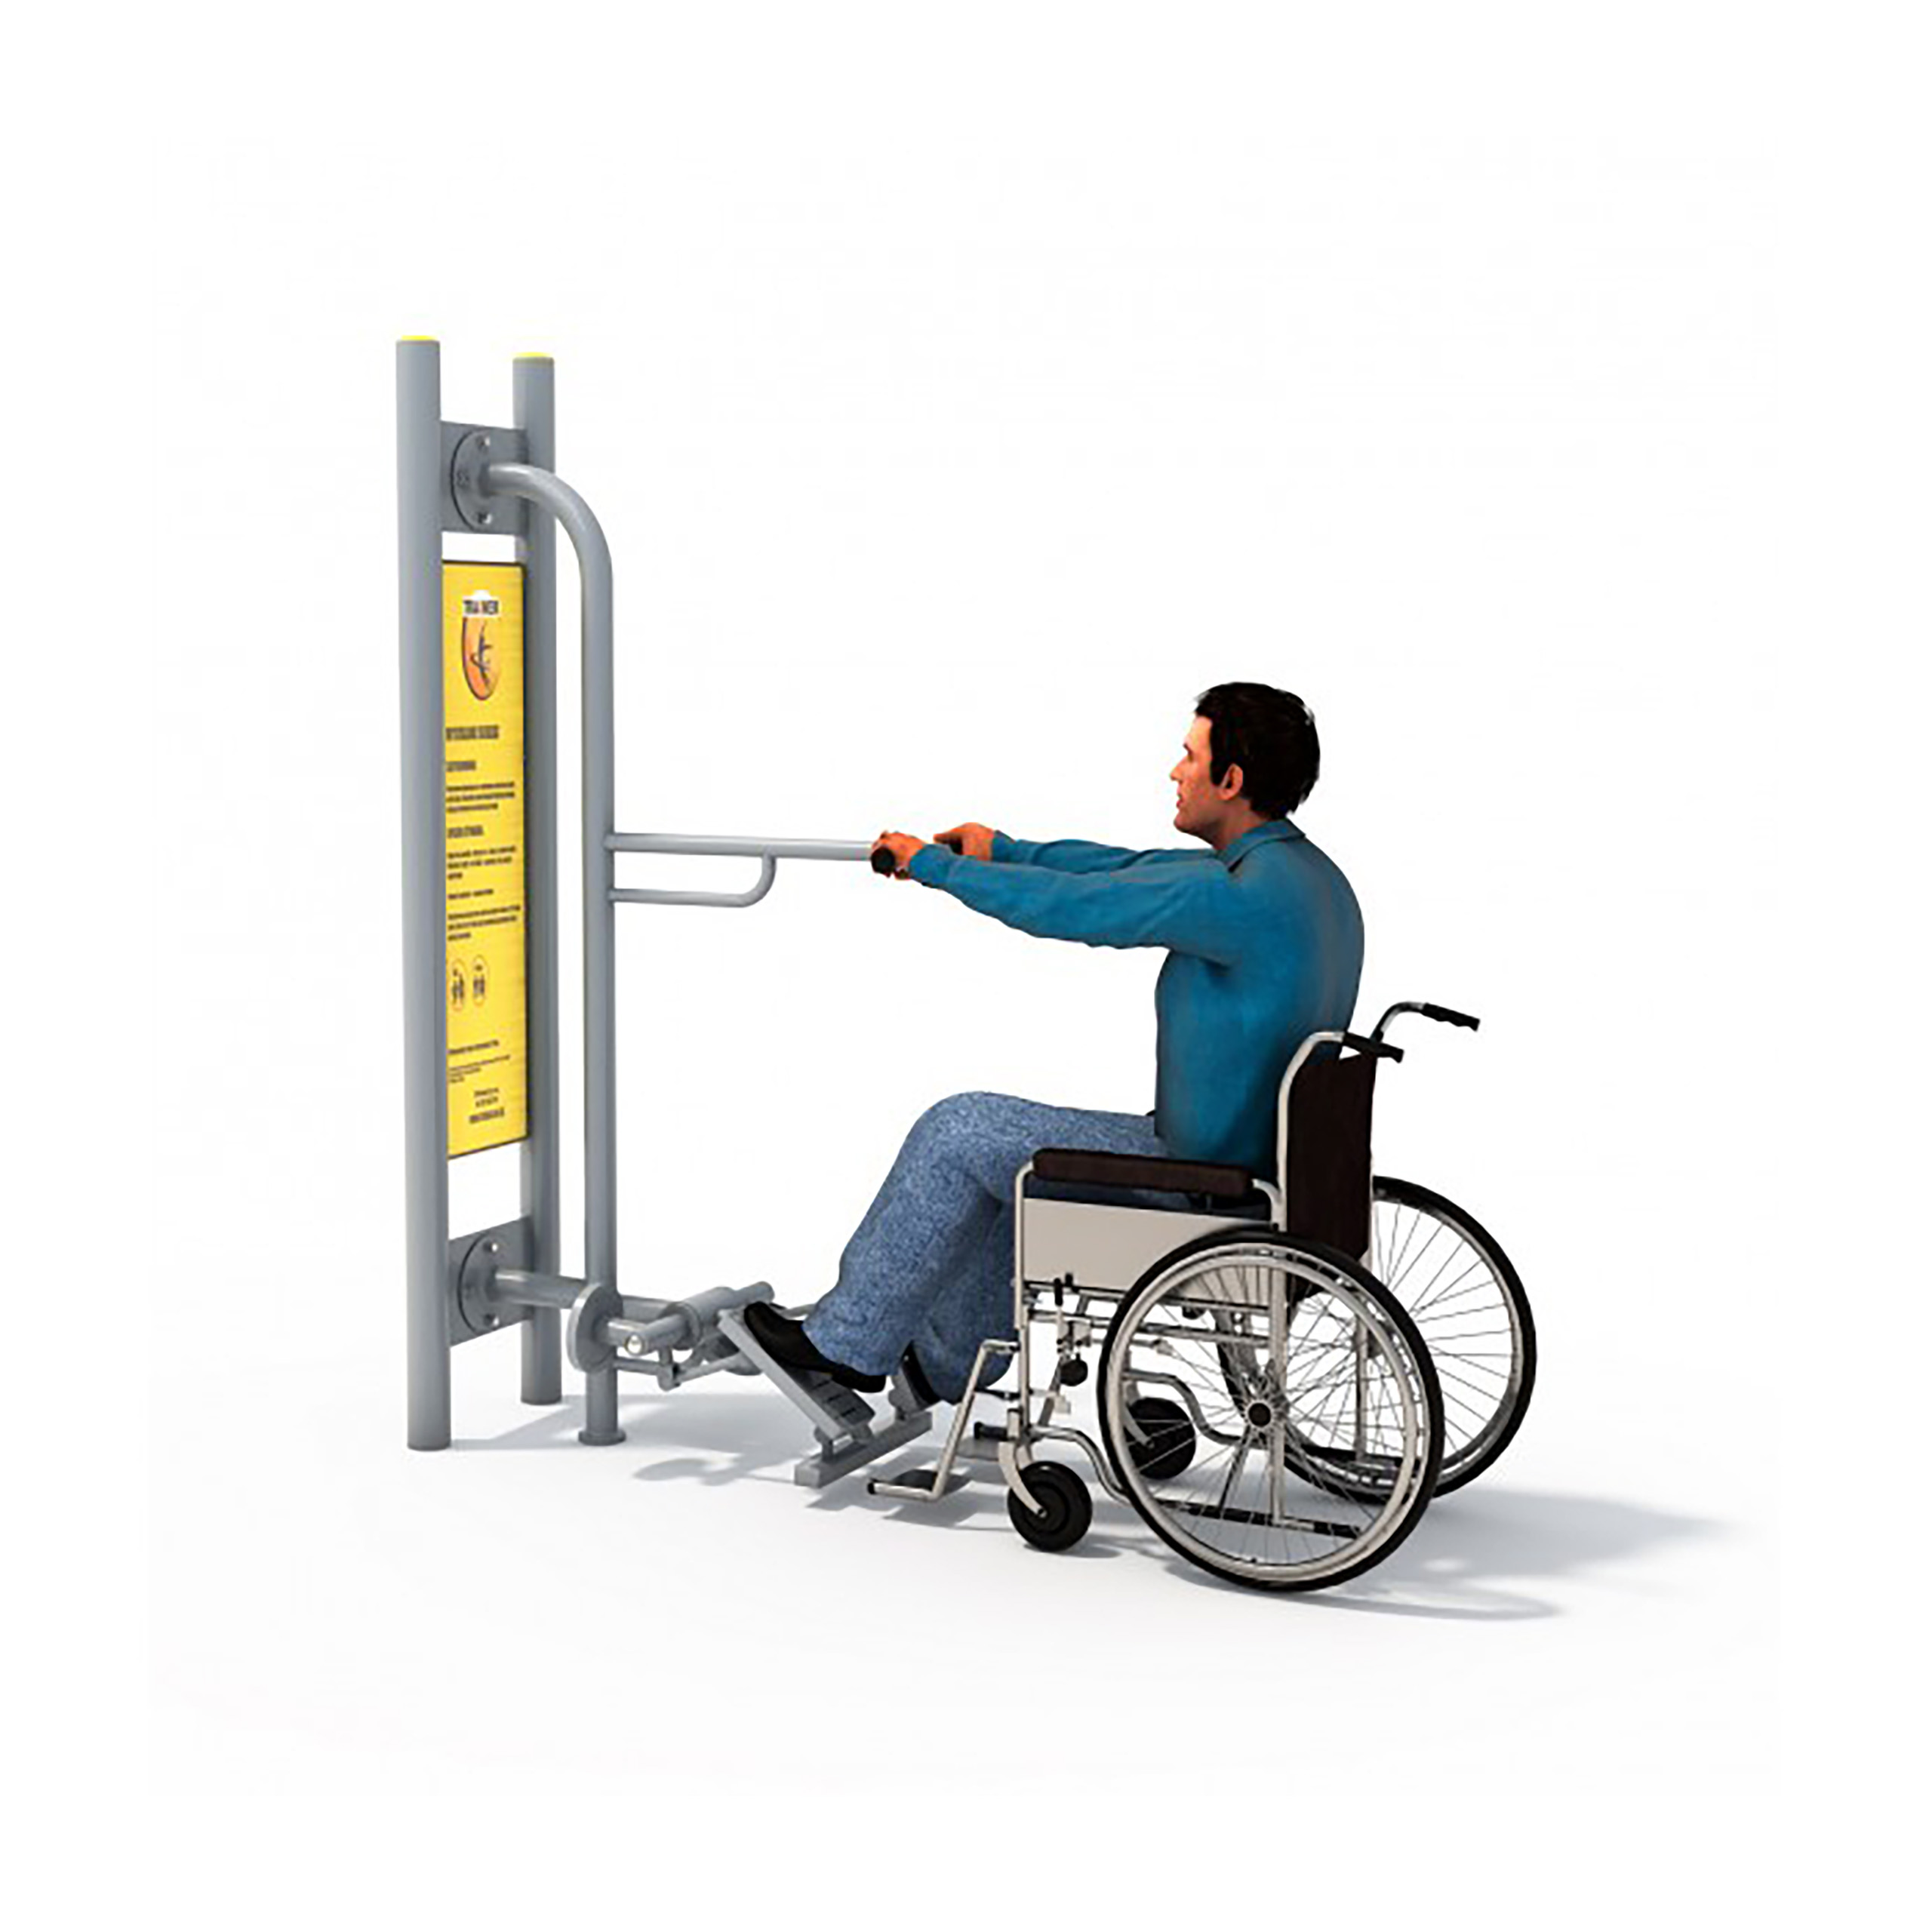 Urządzenie plenerowe dla niepełnosprawnych - Steper Disabled